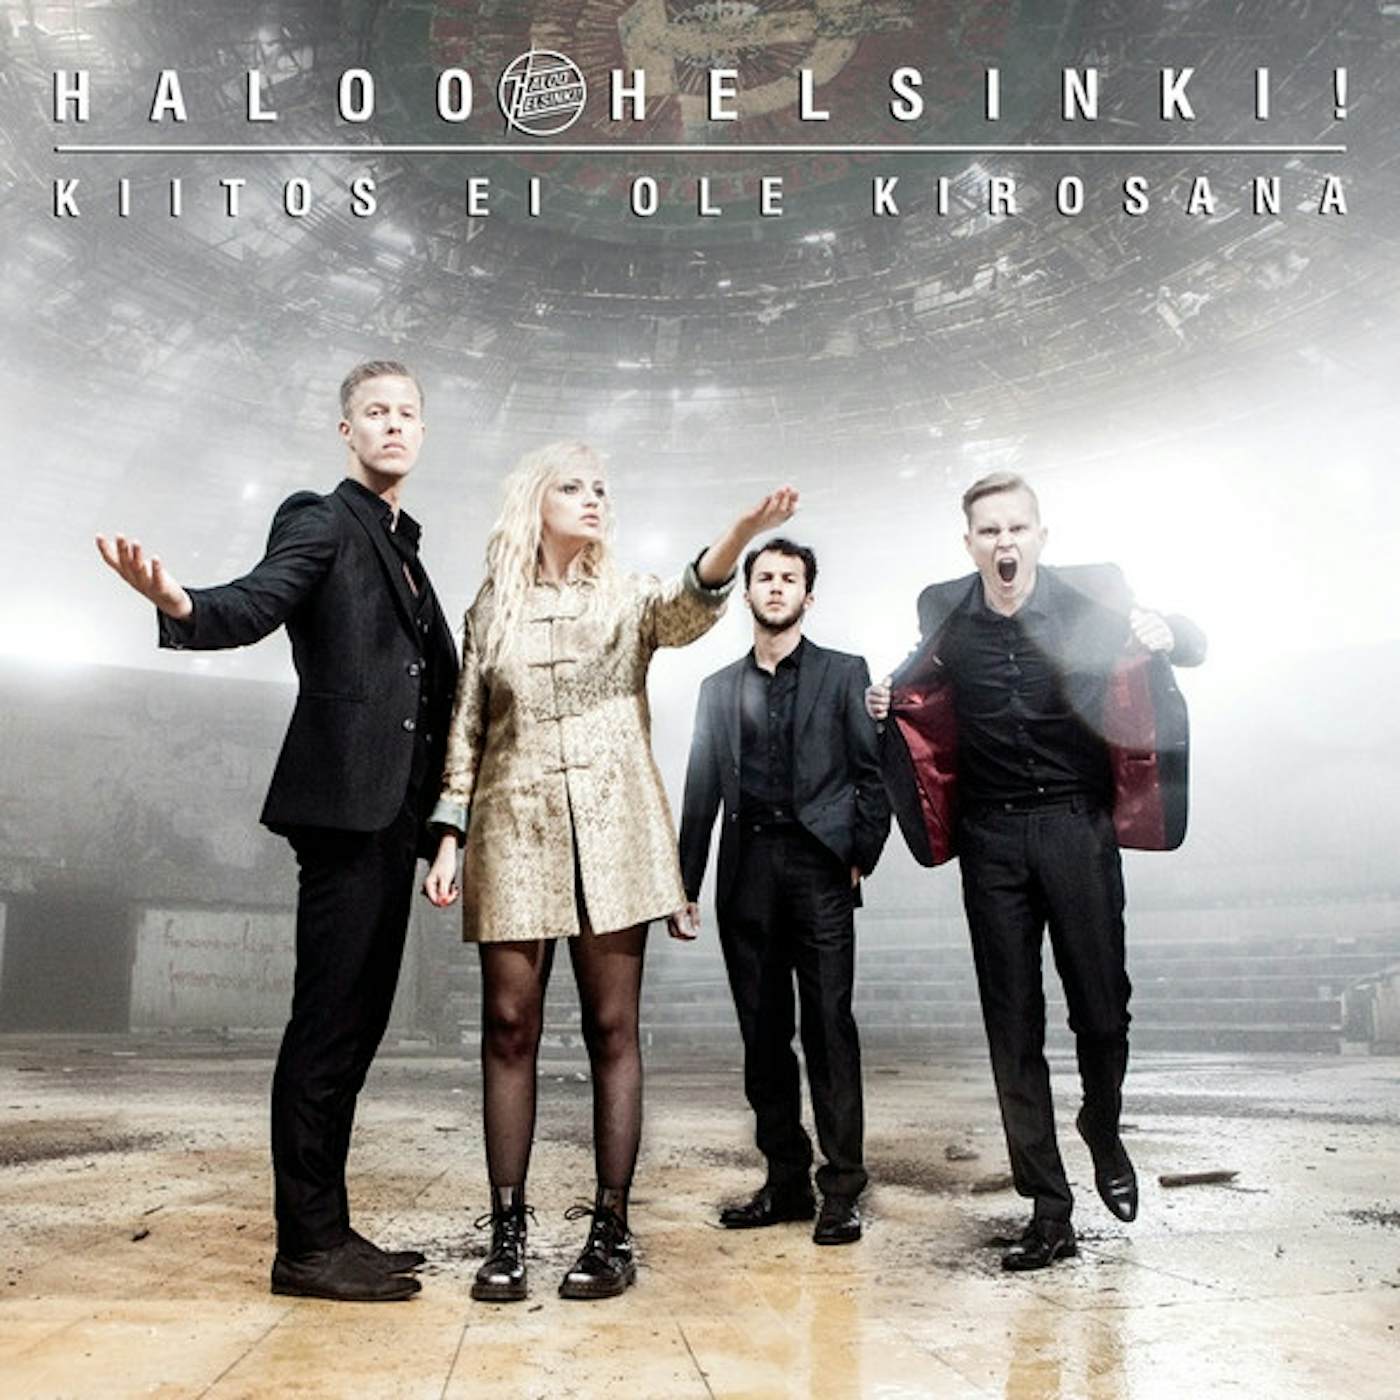 Haloo Helsinki! Kiitos ei ole kirosana Vinyl Record